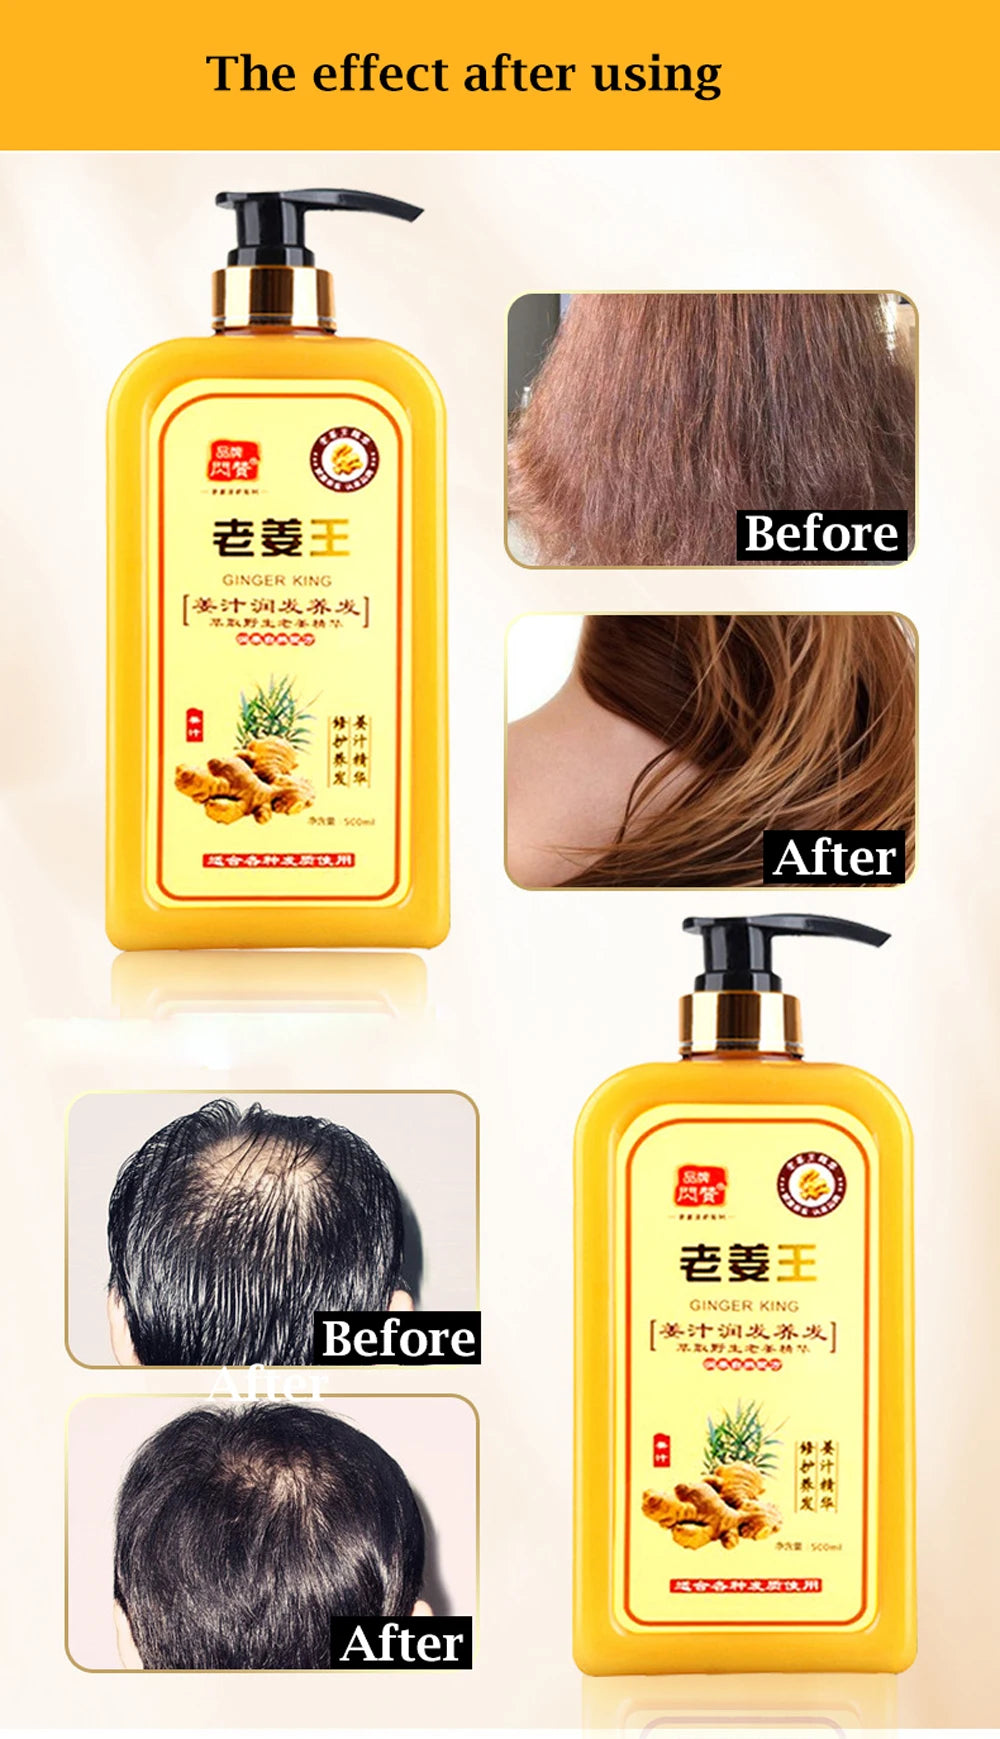 1 Bottle Ginger Juice Anti Hair Loss Hair Shampoo Professional Repair Damage Hair, Hair Growth DENSE,ANTI ITCHING,OIL CONTROL